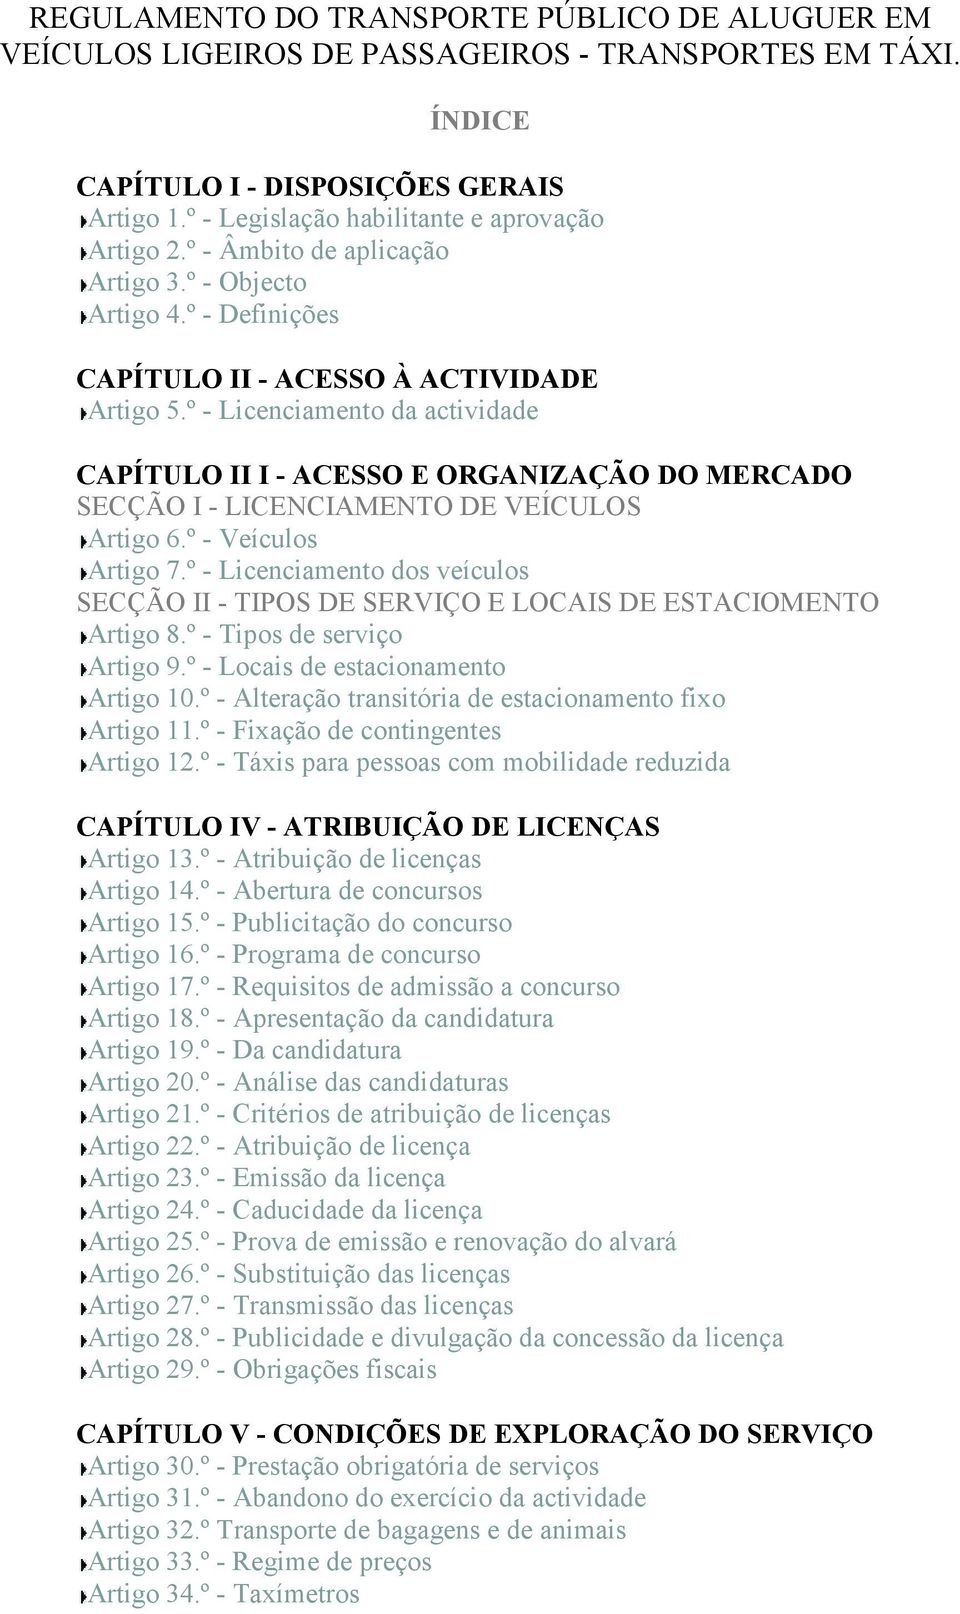 º - Licenciamento da actividade CAPÍTULO II I - ACESSO E ORGANIZAÇÃO DO MERCADO SECÇÃO I - LICENCIAMENTO DE VEÍCULOS Artigo 6.º - Veículos Artigo 7.